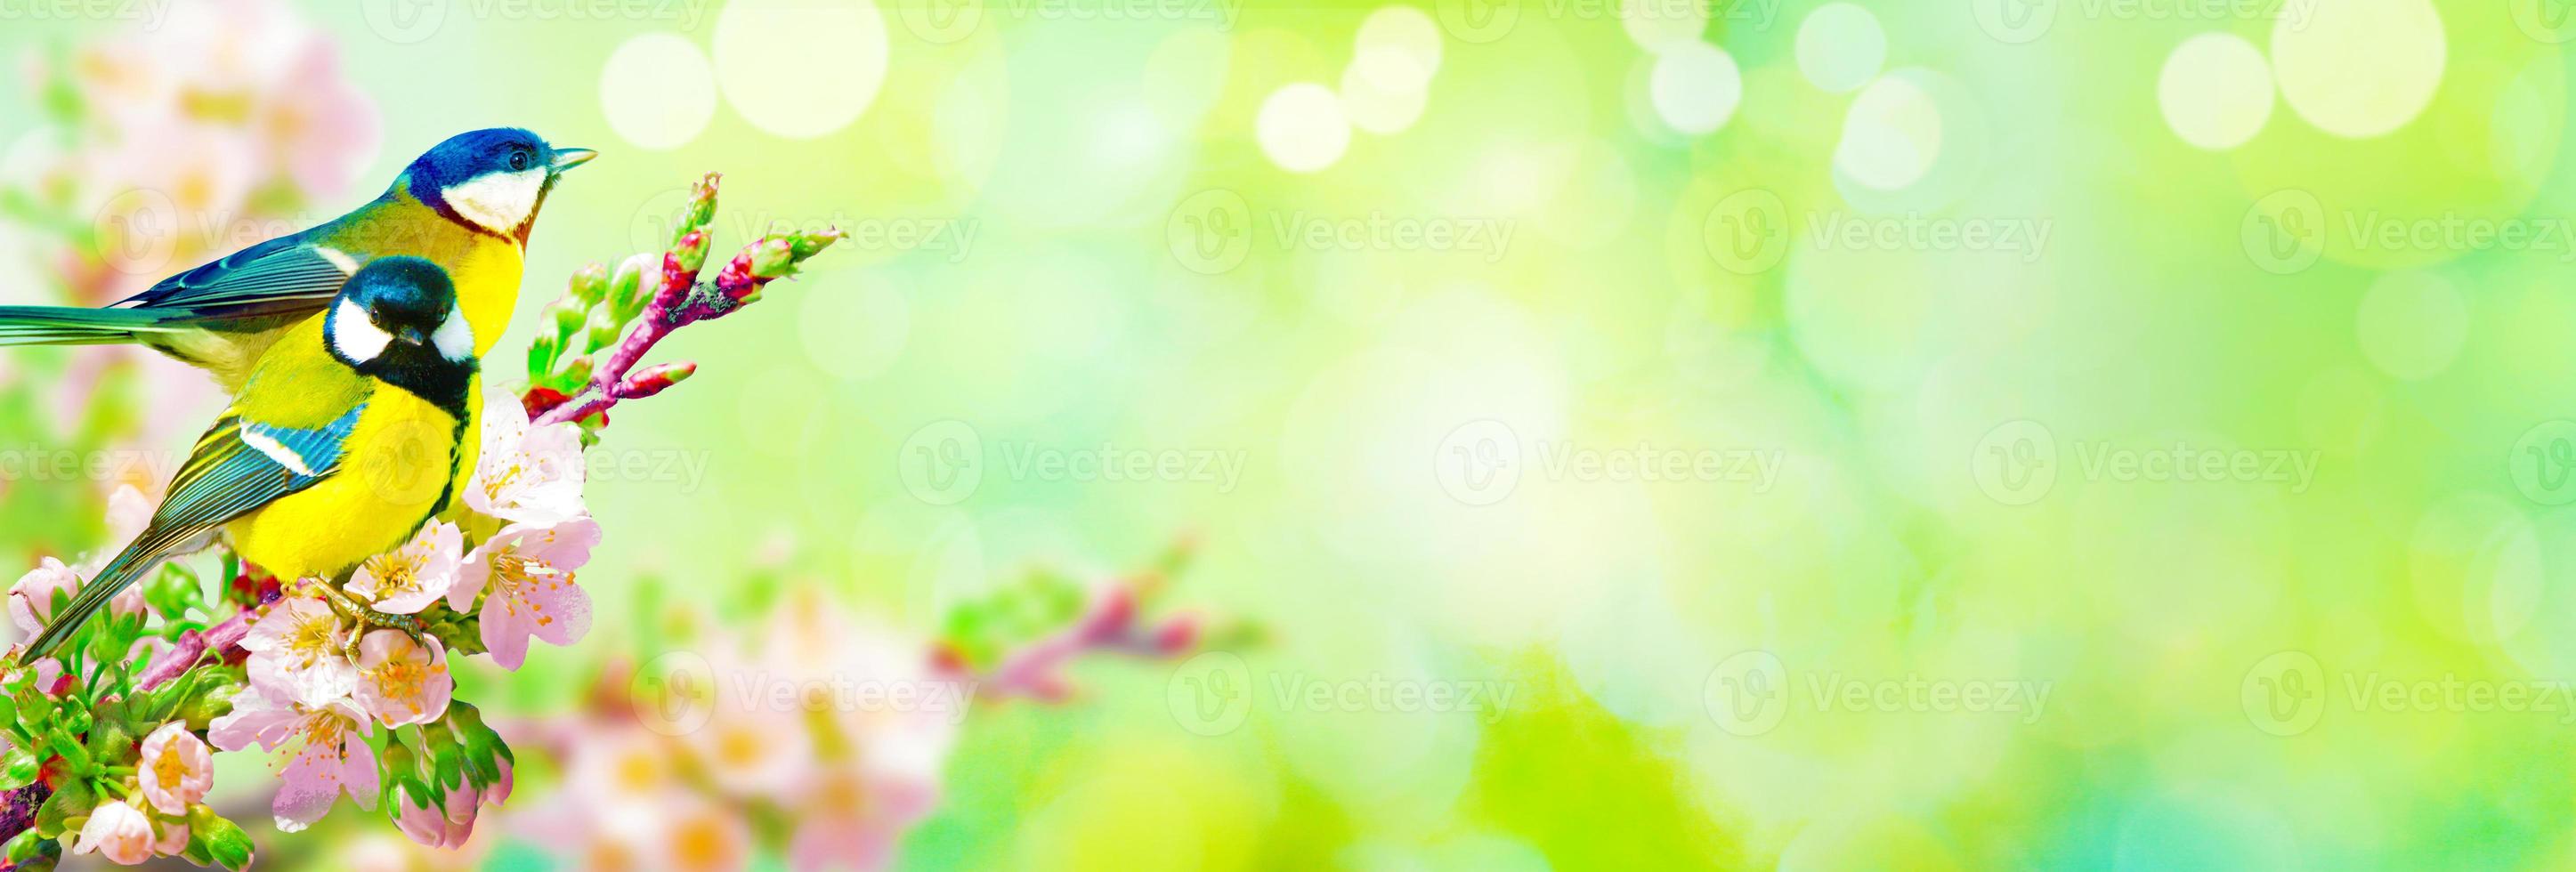 talgoxen sitter på en trädgren i vårvädret foto